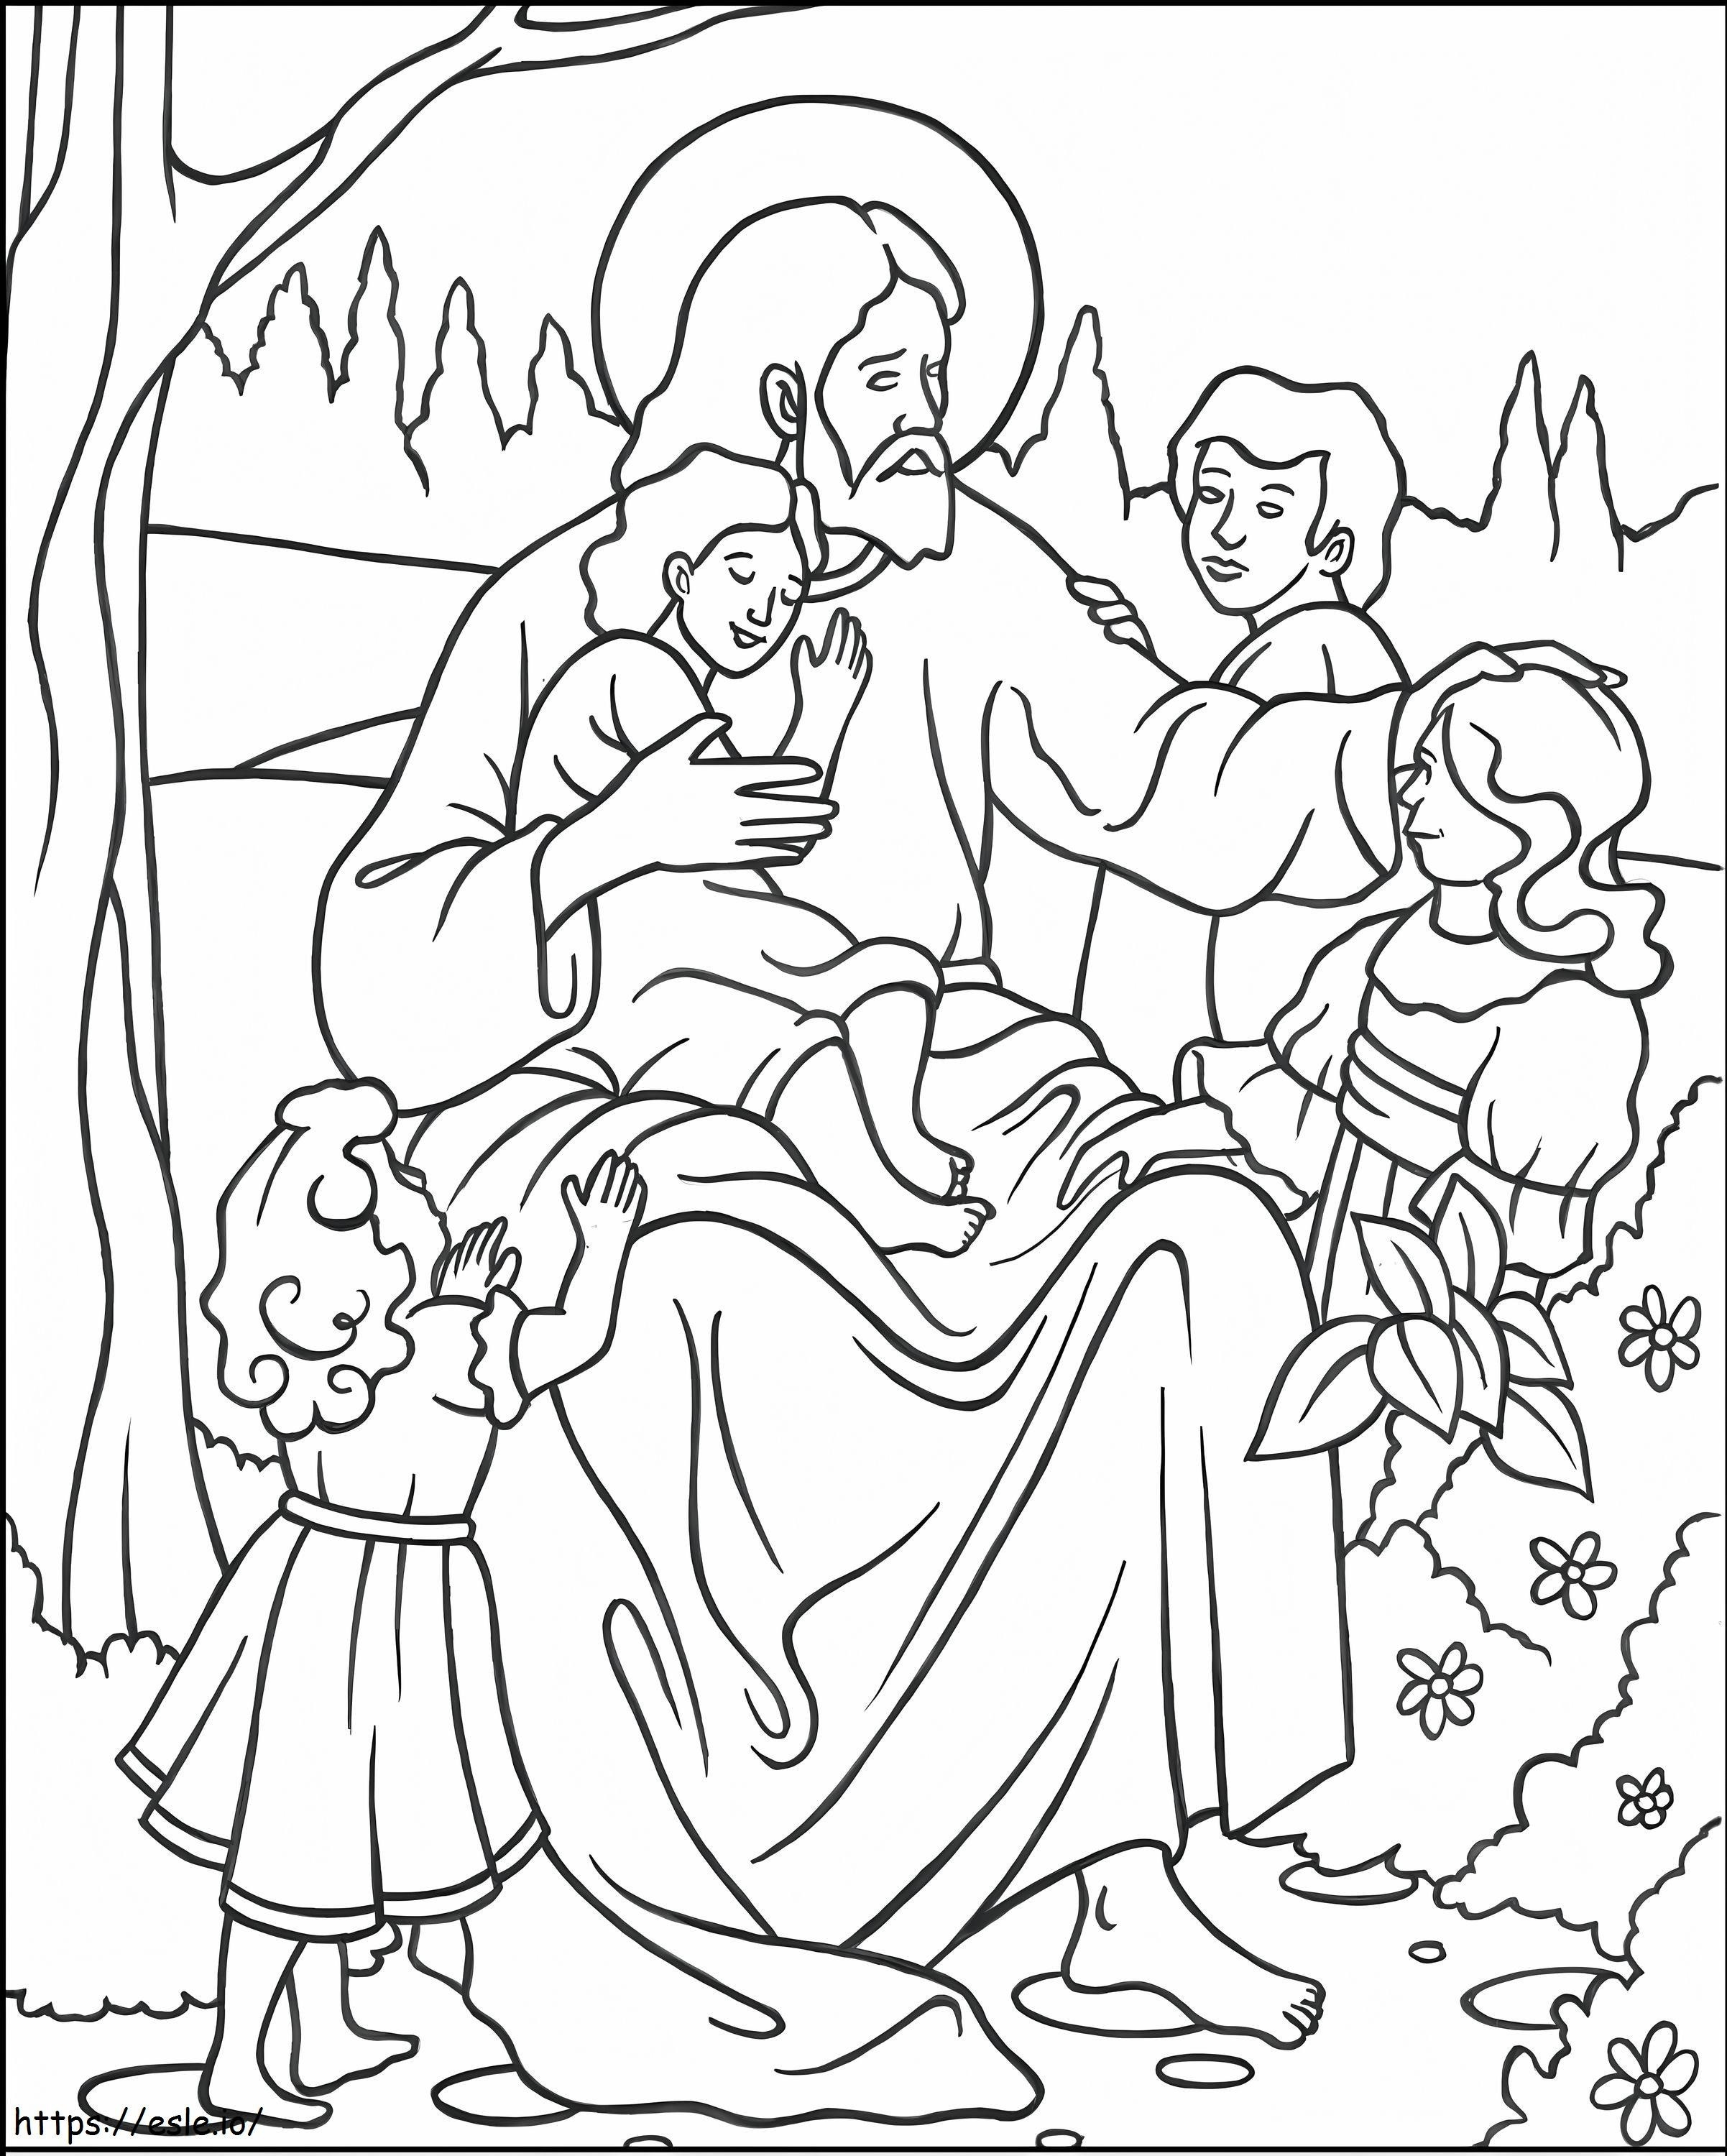 Isus Și Lasă Copiii Micuți de colorat